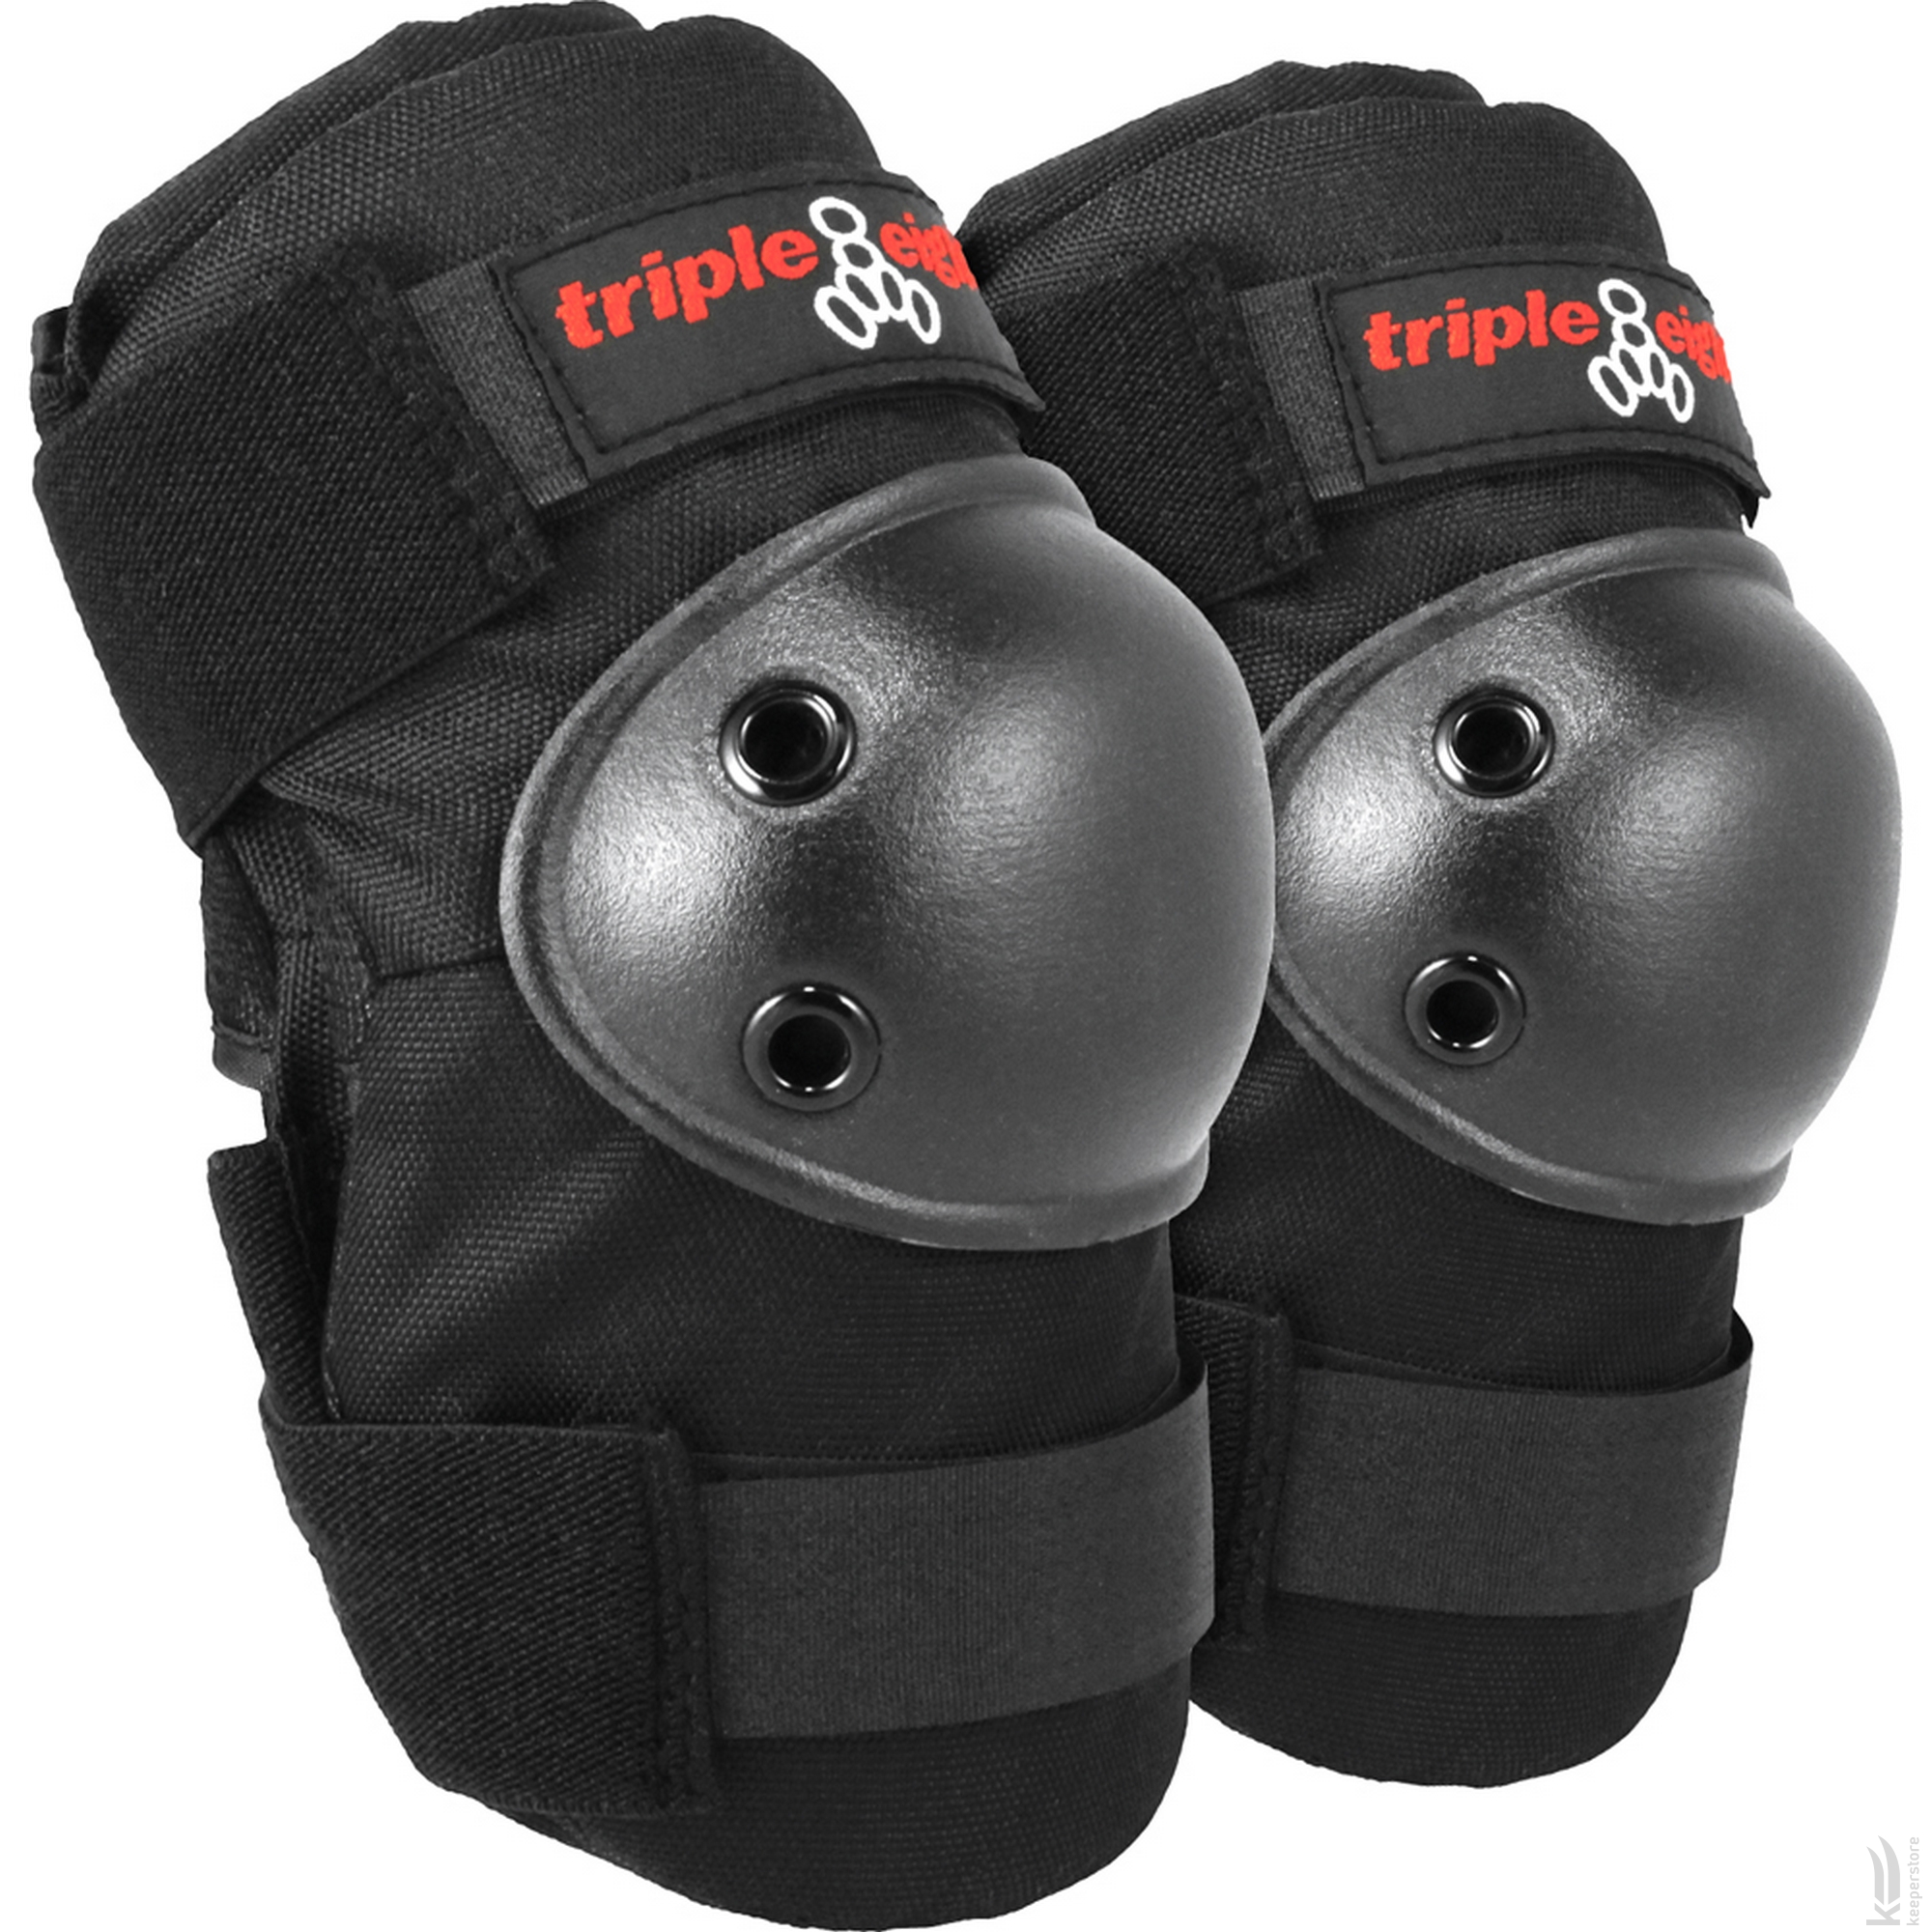 Комплект защиты Triple8 Saver Series 3-Pack (S) отзывы - изображения 5